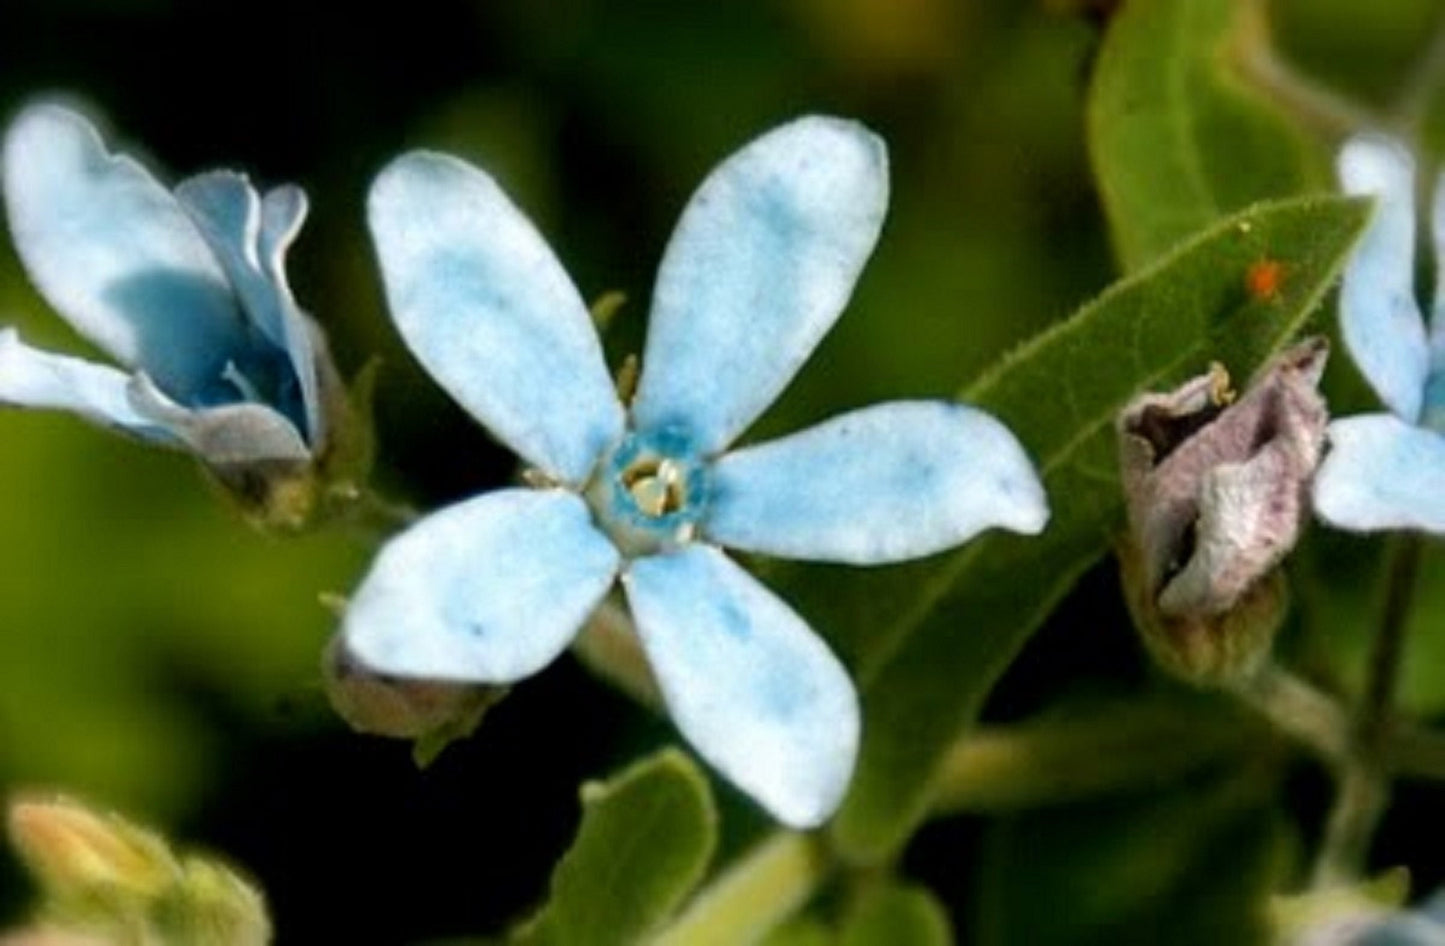 Tweedia Caerulea * Southern Star * Blue Milkweed * Stunning Blue Sky Flowers * 5 Seeds *